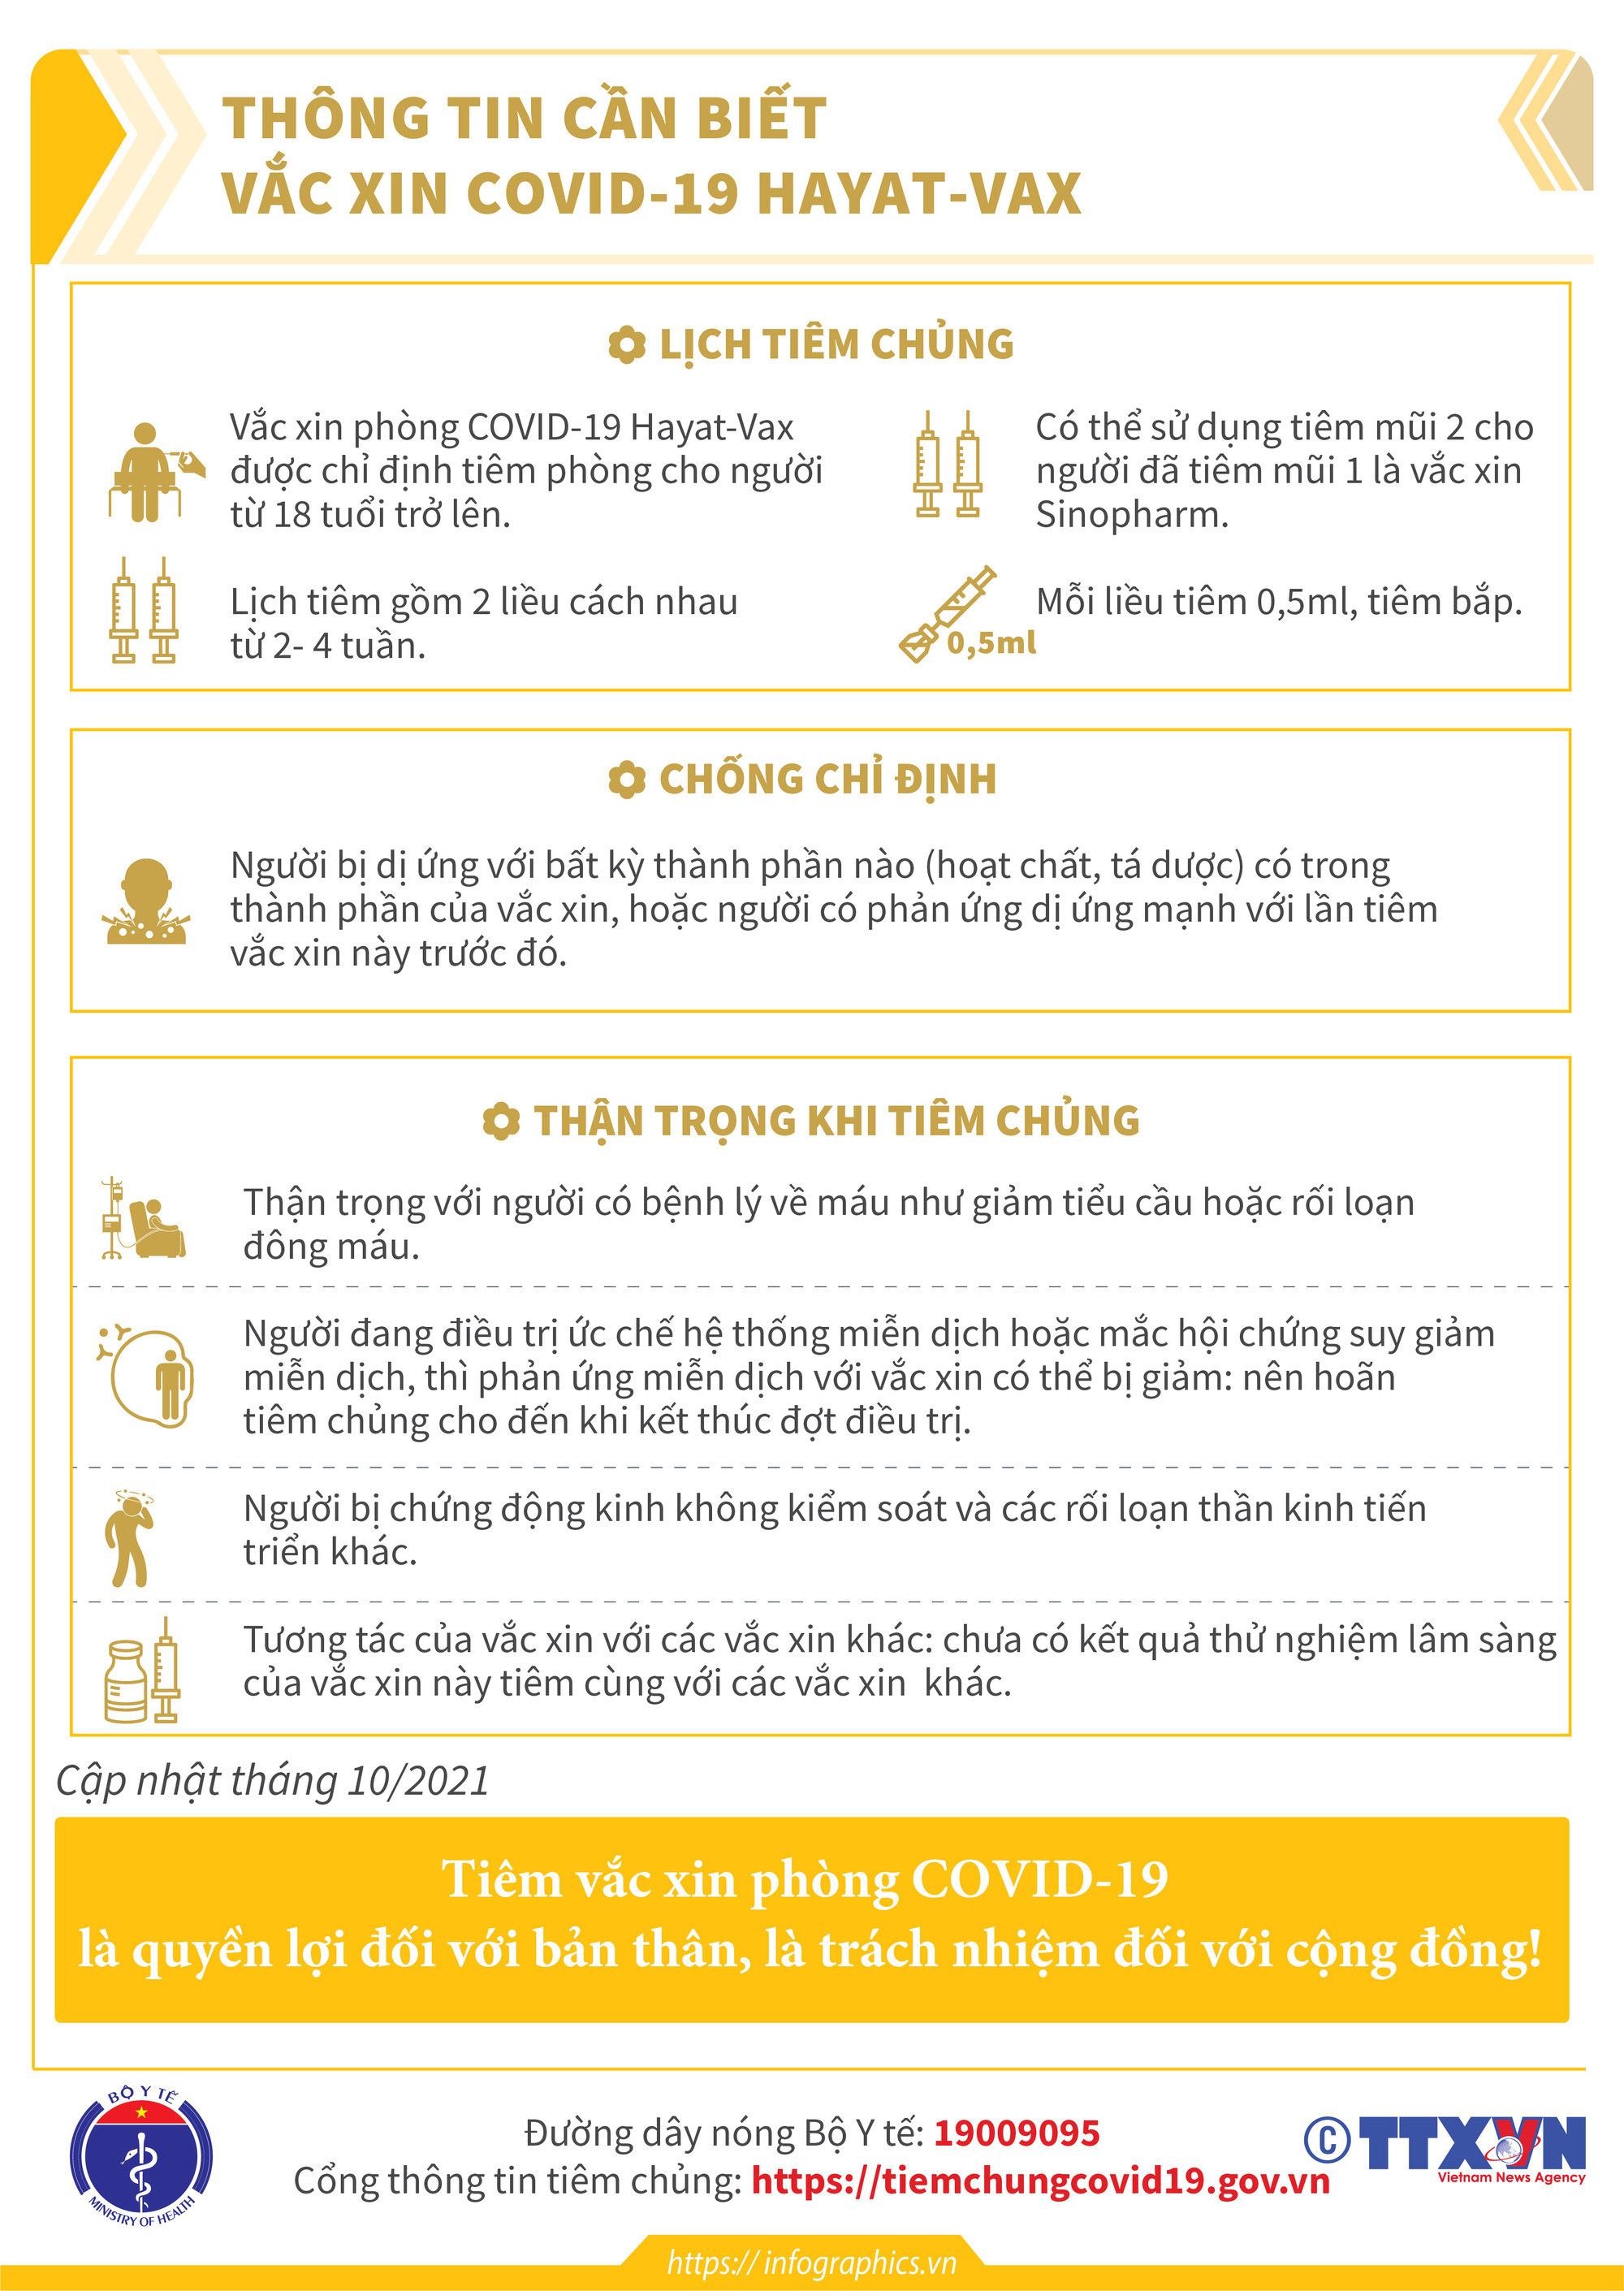 [Infographic] Thông tin cần biết về 03 loại vaccine phòng COVID-19: Vaccine Hayat-Vax, vaccine Verocell, vaccine Abdala  - Ảnh 2.